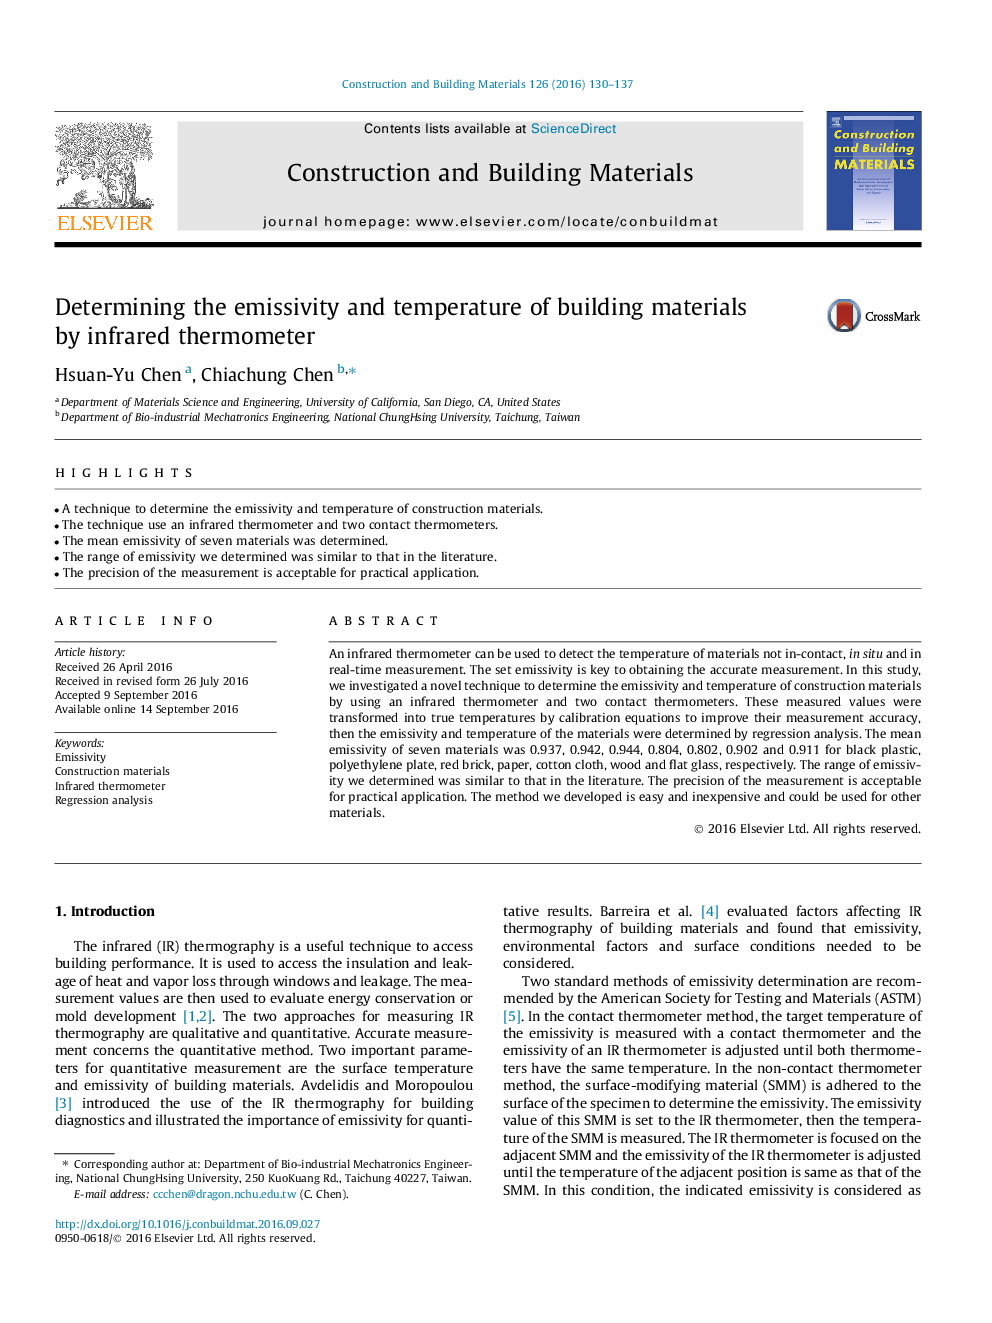 تعیین میزان اشباع و دما مواد ساختمانی توسط دماسنج مادون قرمز 